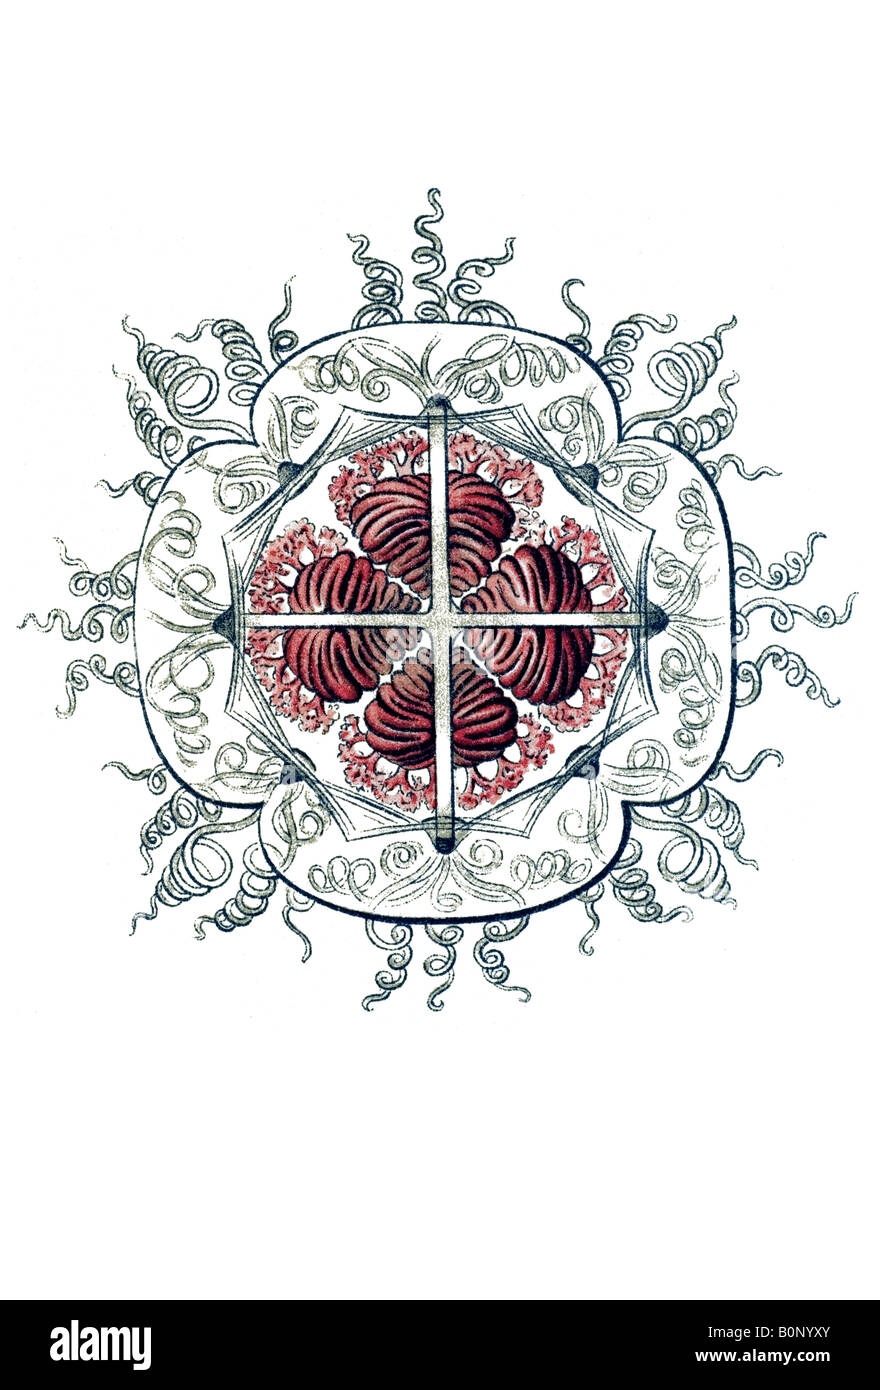 Nom Rathkea fasciculata Anthomedusae, Haeckel, l'Europe du 20e siècle art nouveau Banque D'Images